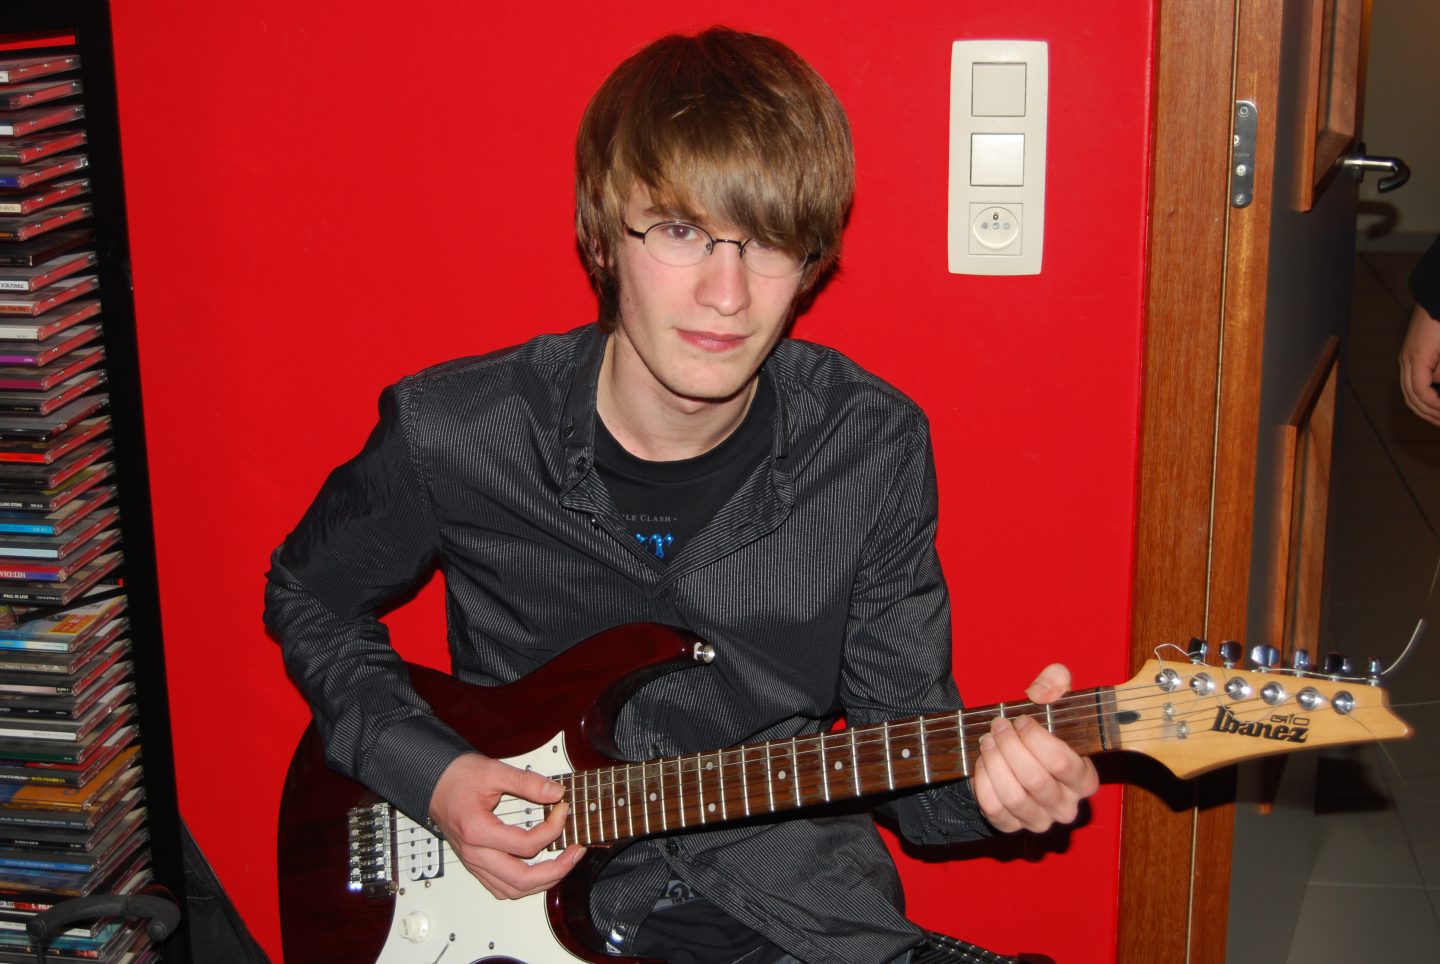 Student op kot in Arenberg die gitaar speelt